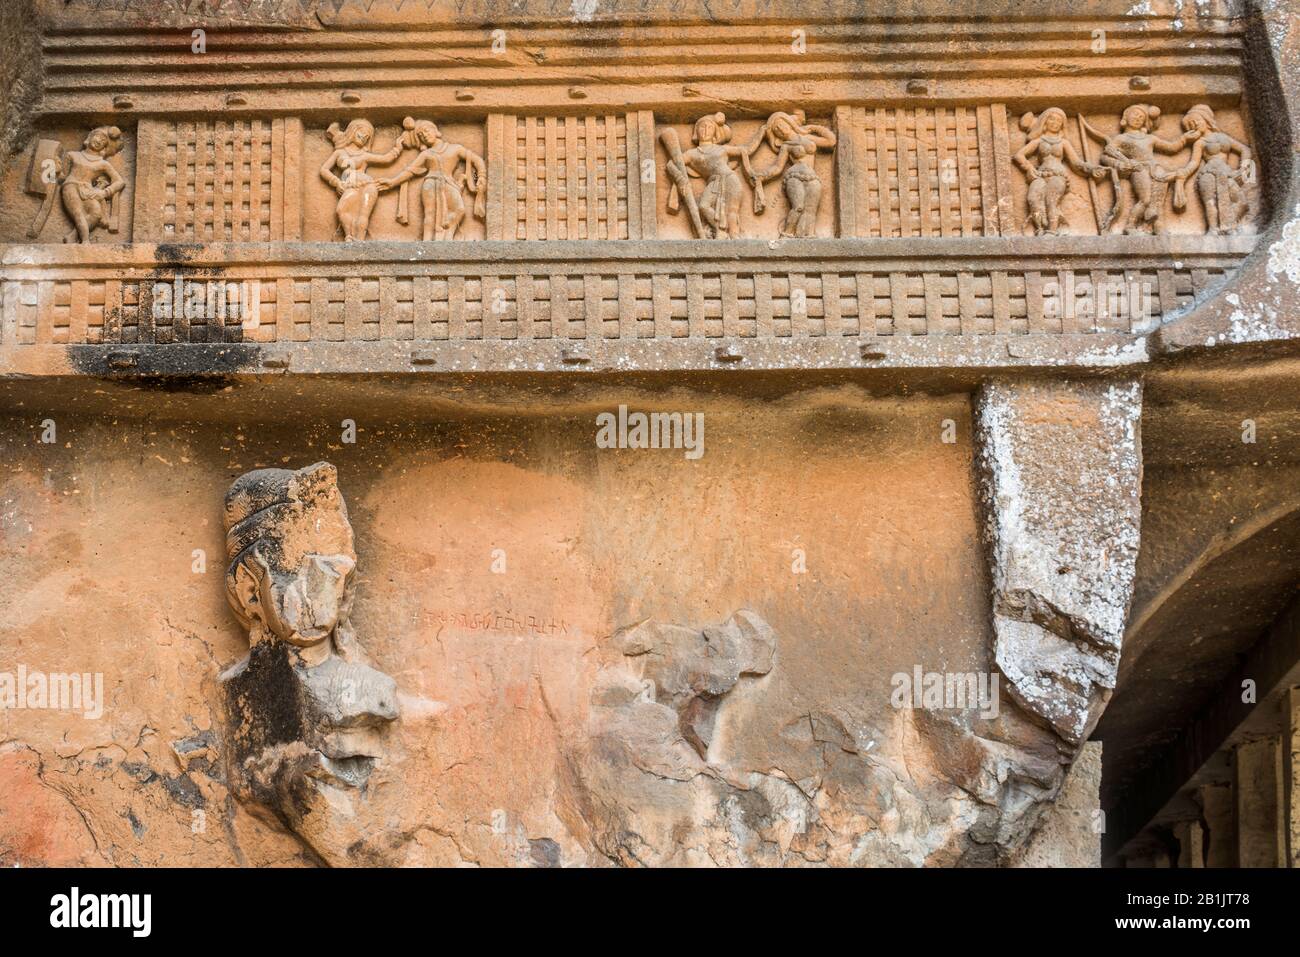 Grotte di Kondana, Karjat, Maharashtra, India : lato sinistro di façade che mostra le figure danzanti sotto cui è il guardiano Yaksha e archi in miniatura sopra. Foto Stock